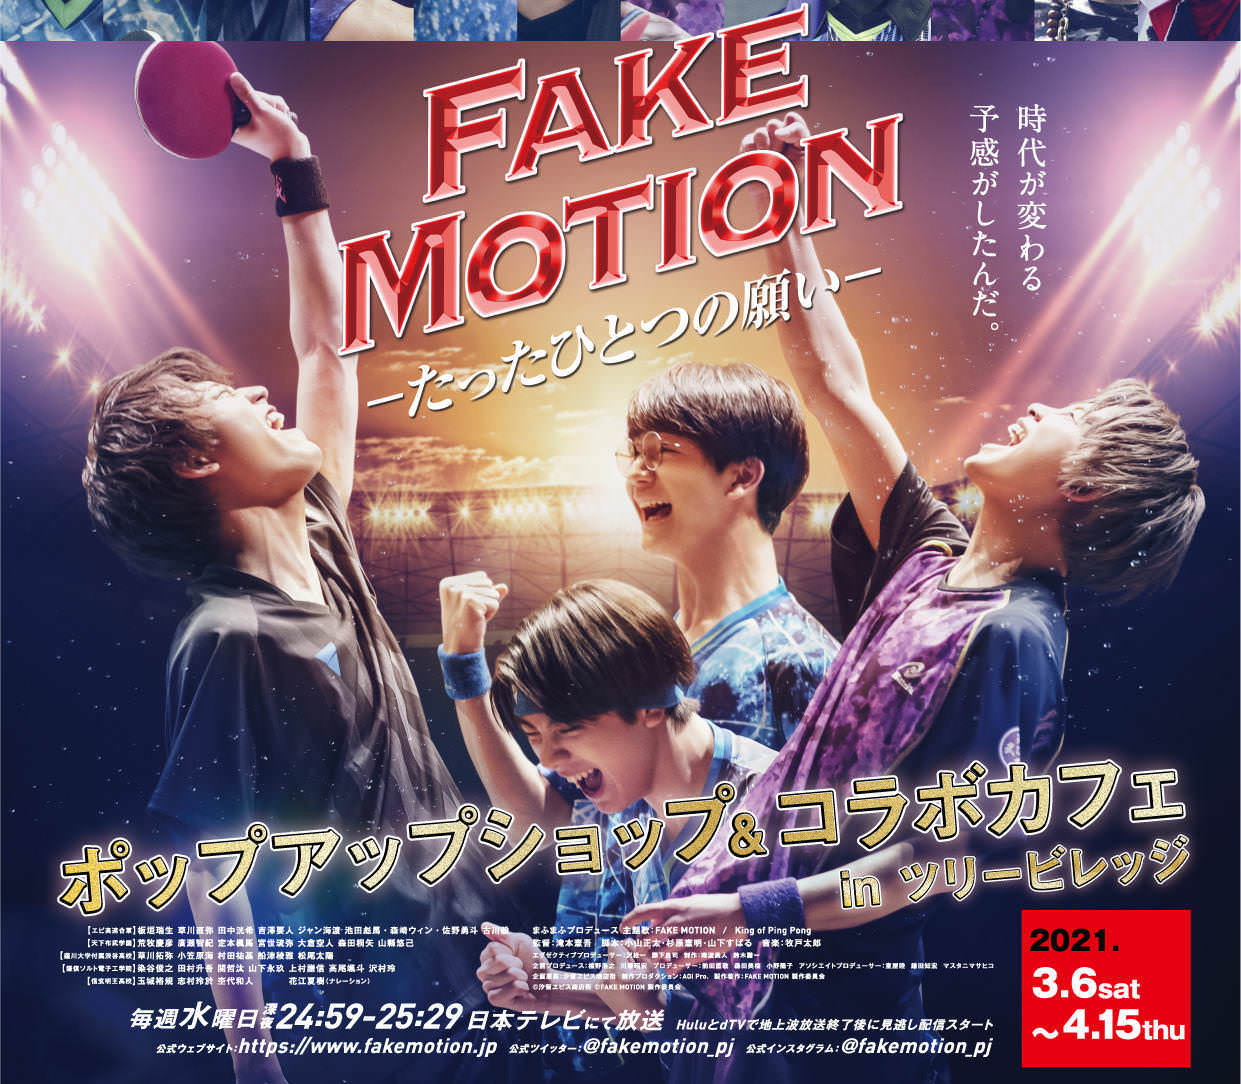 FAKE MOTION カフェ & ショップ in ツリービレッジ 3.6-4.15 開催!!